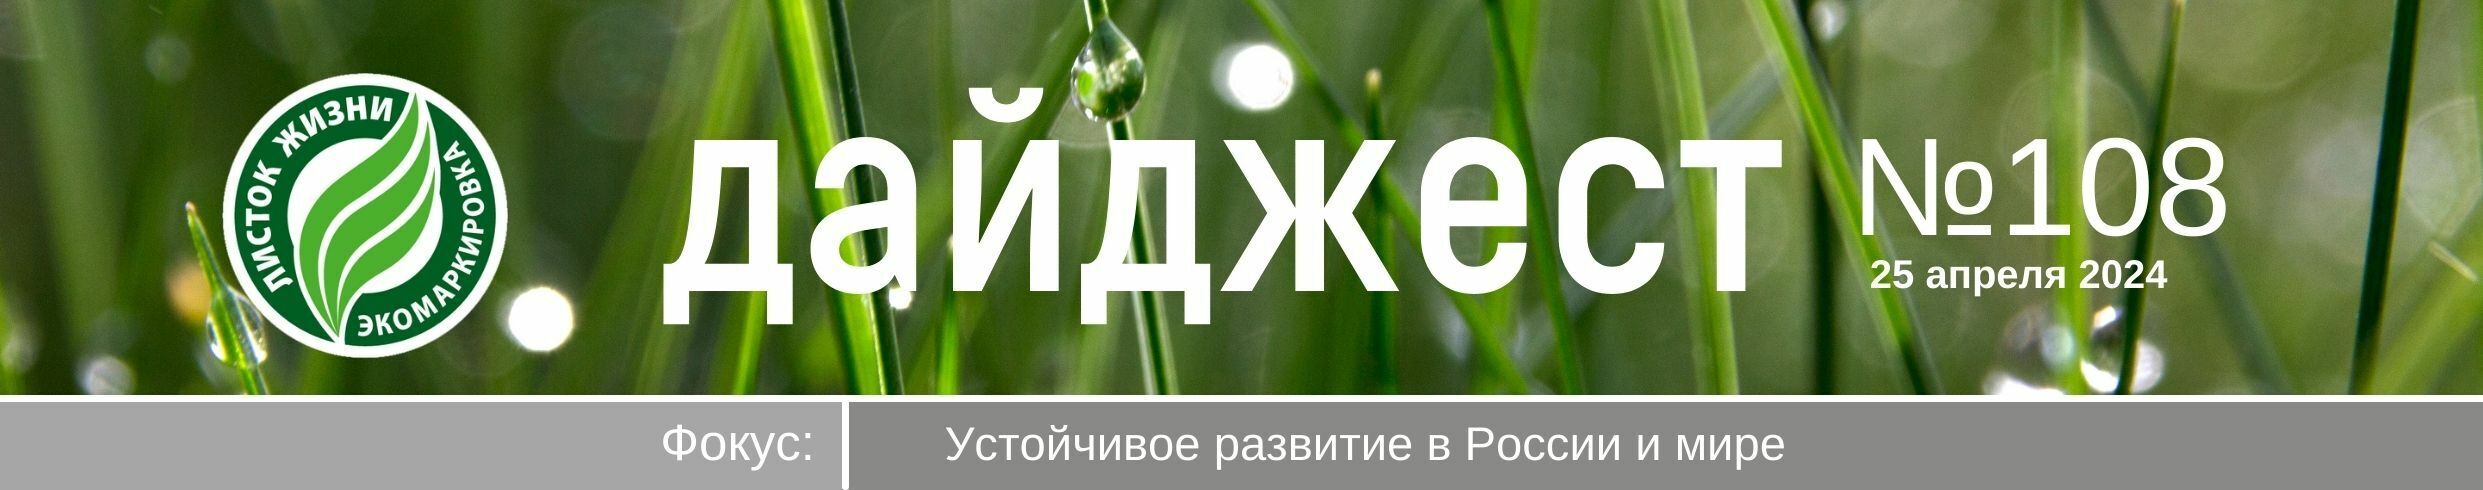 Дайджест №108 от 25 апреля 2024 года. Фокус: Устойчивое развитие в России и мире